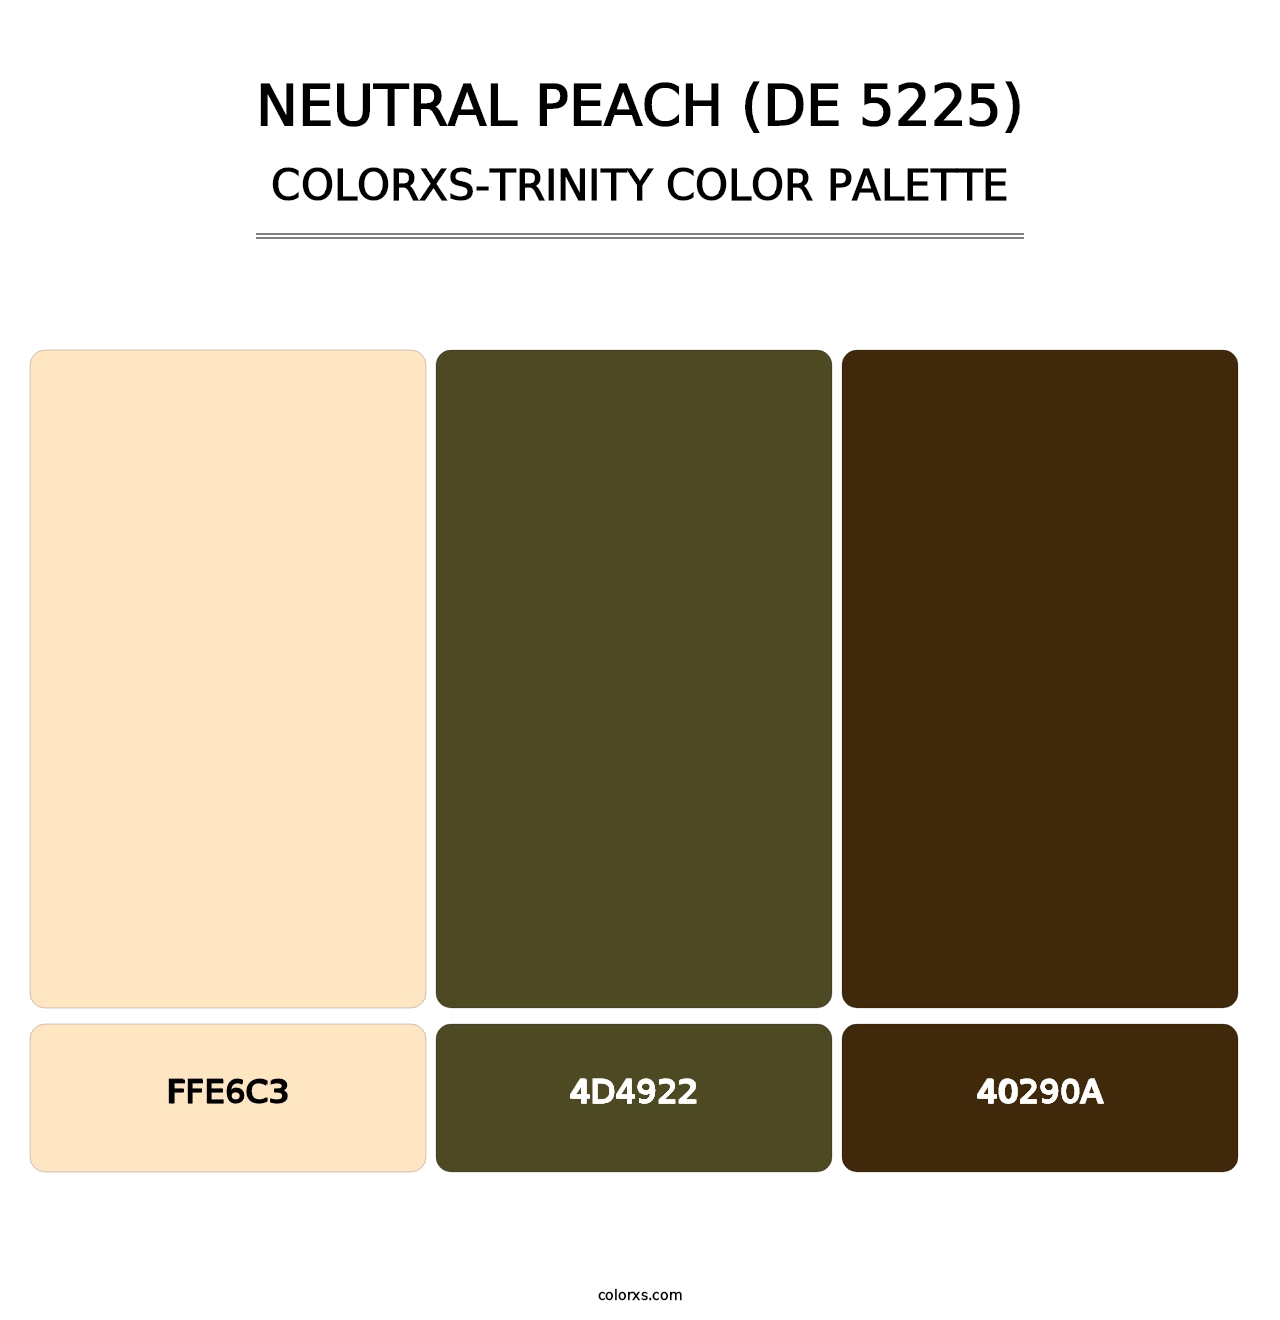 Neutral Peach (DE 5225) - Colorxs Trinity Palette